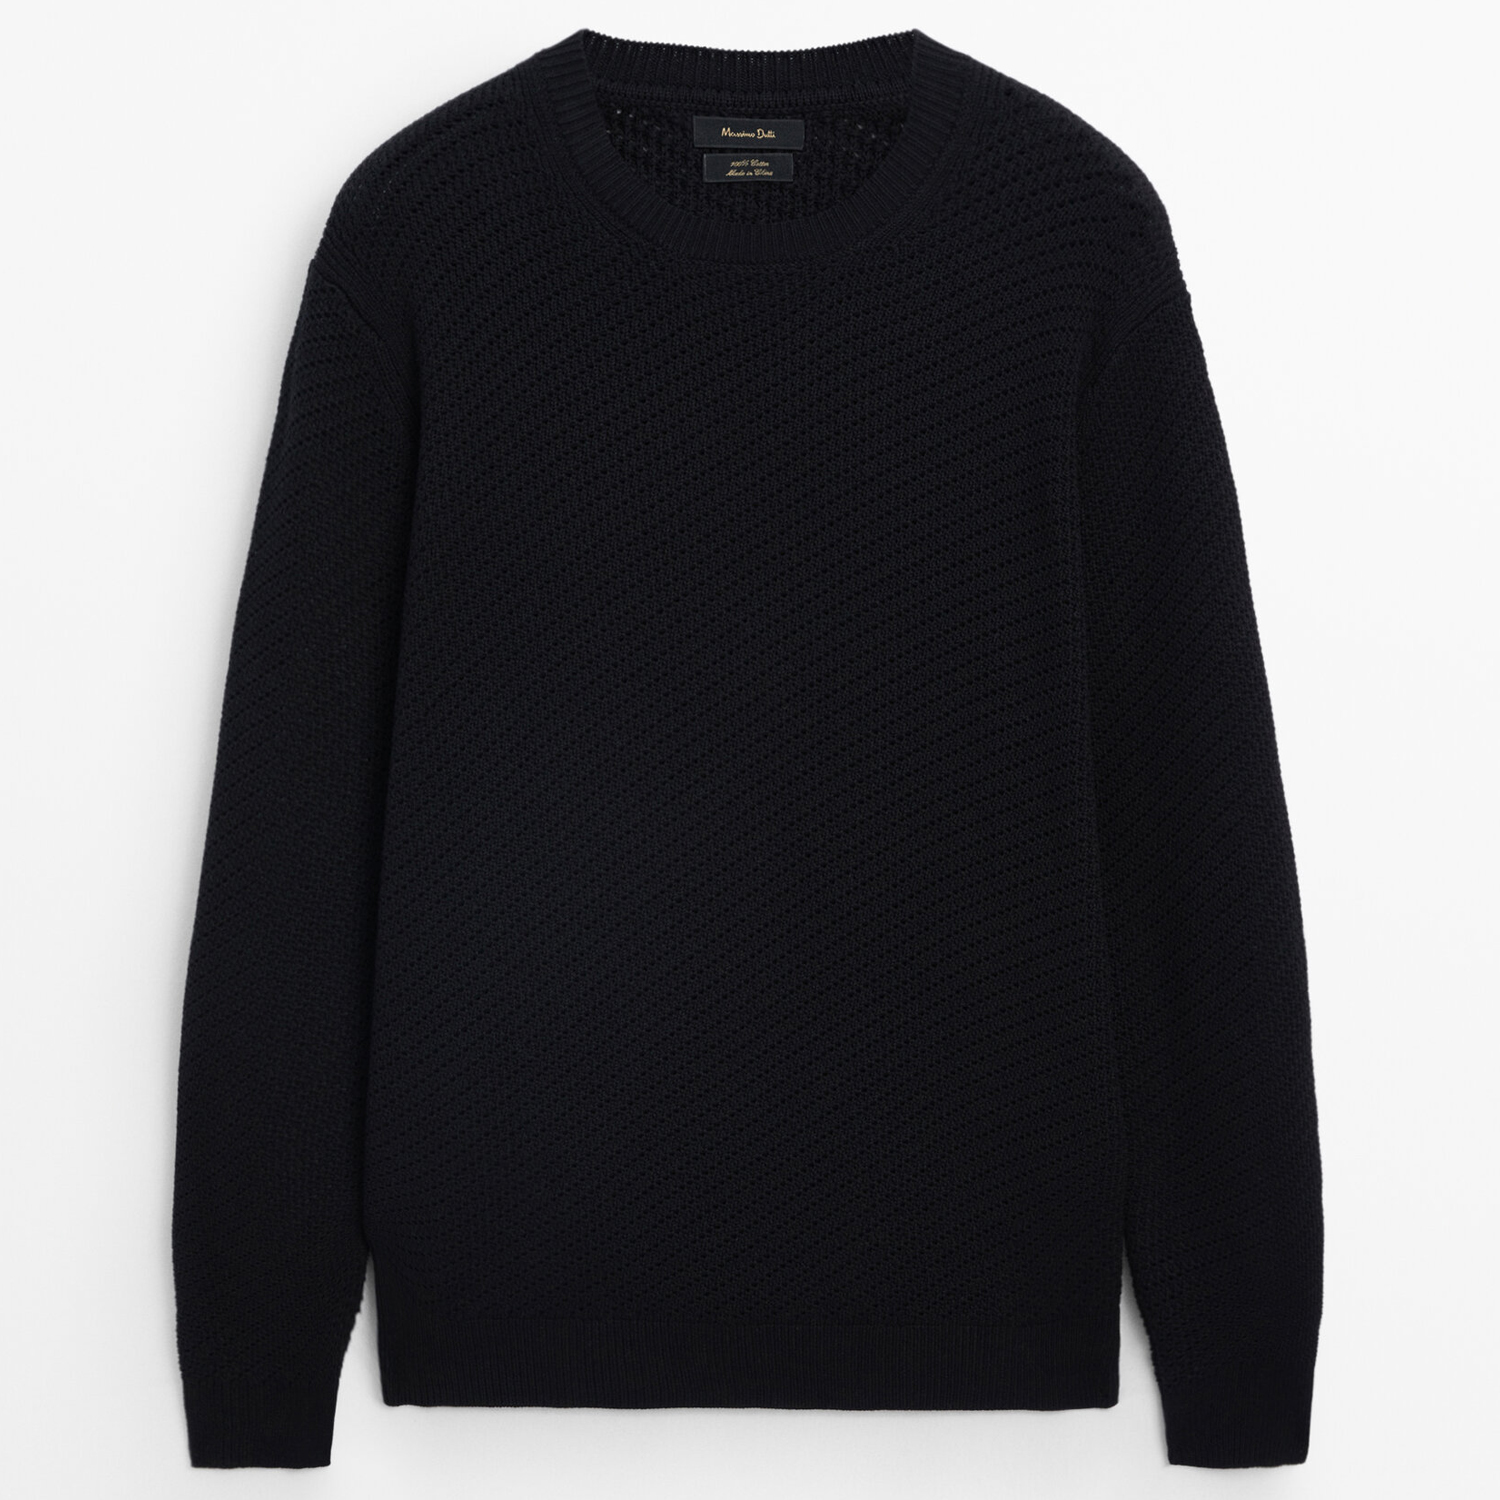 Свитер Massimo Dutti Crew Neck Cotton Mesh Knit, черный свитер massimo dutti 100% cotton crew neck голубой